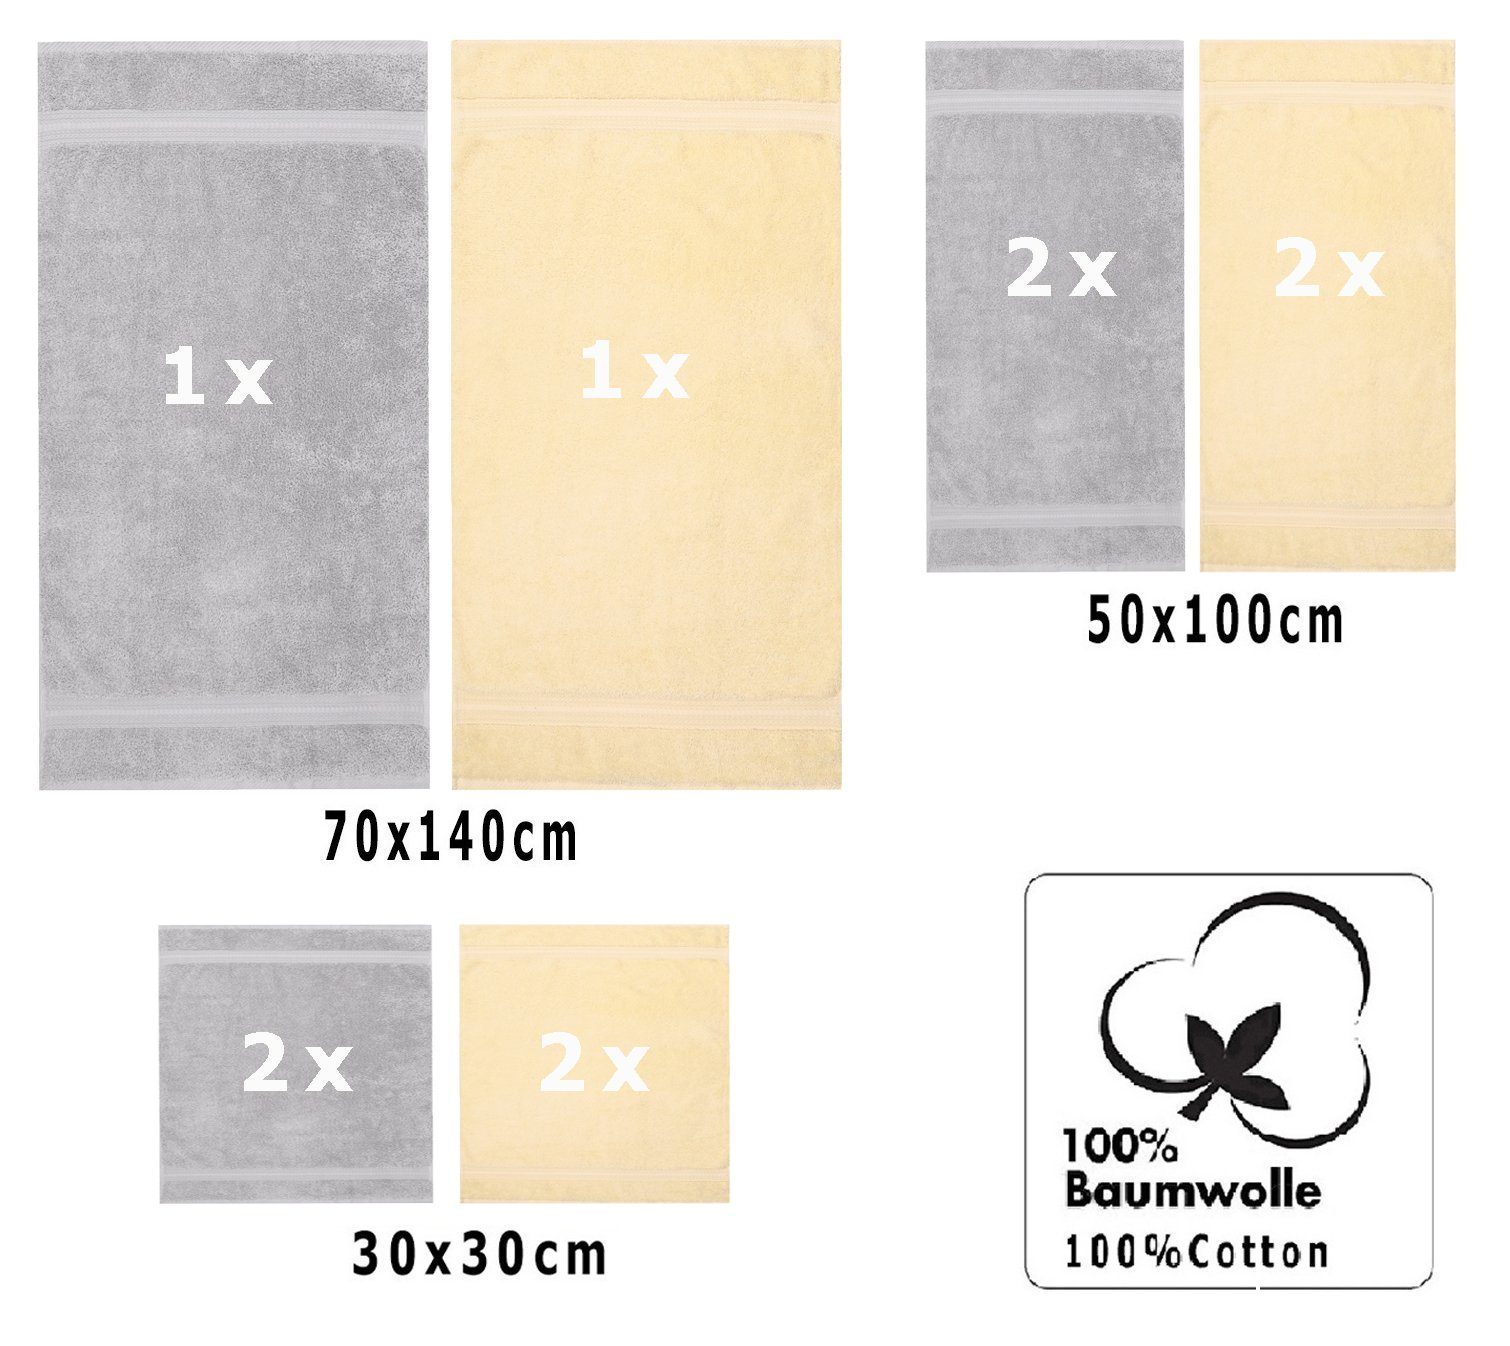 Handtuch GOLD g/m² & 600 10 Set Handtuch beige Qualität TLG. Baumwolle Betz Silbergrau, Set 100%